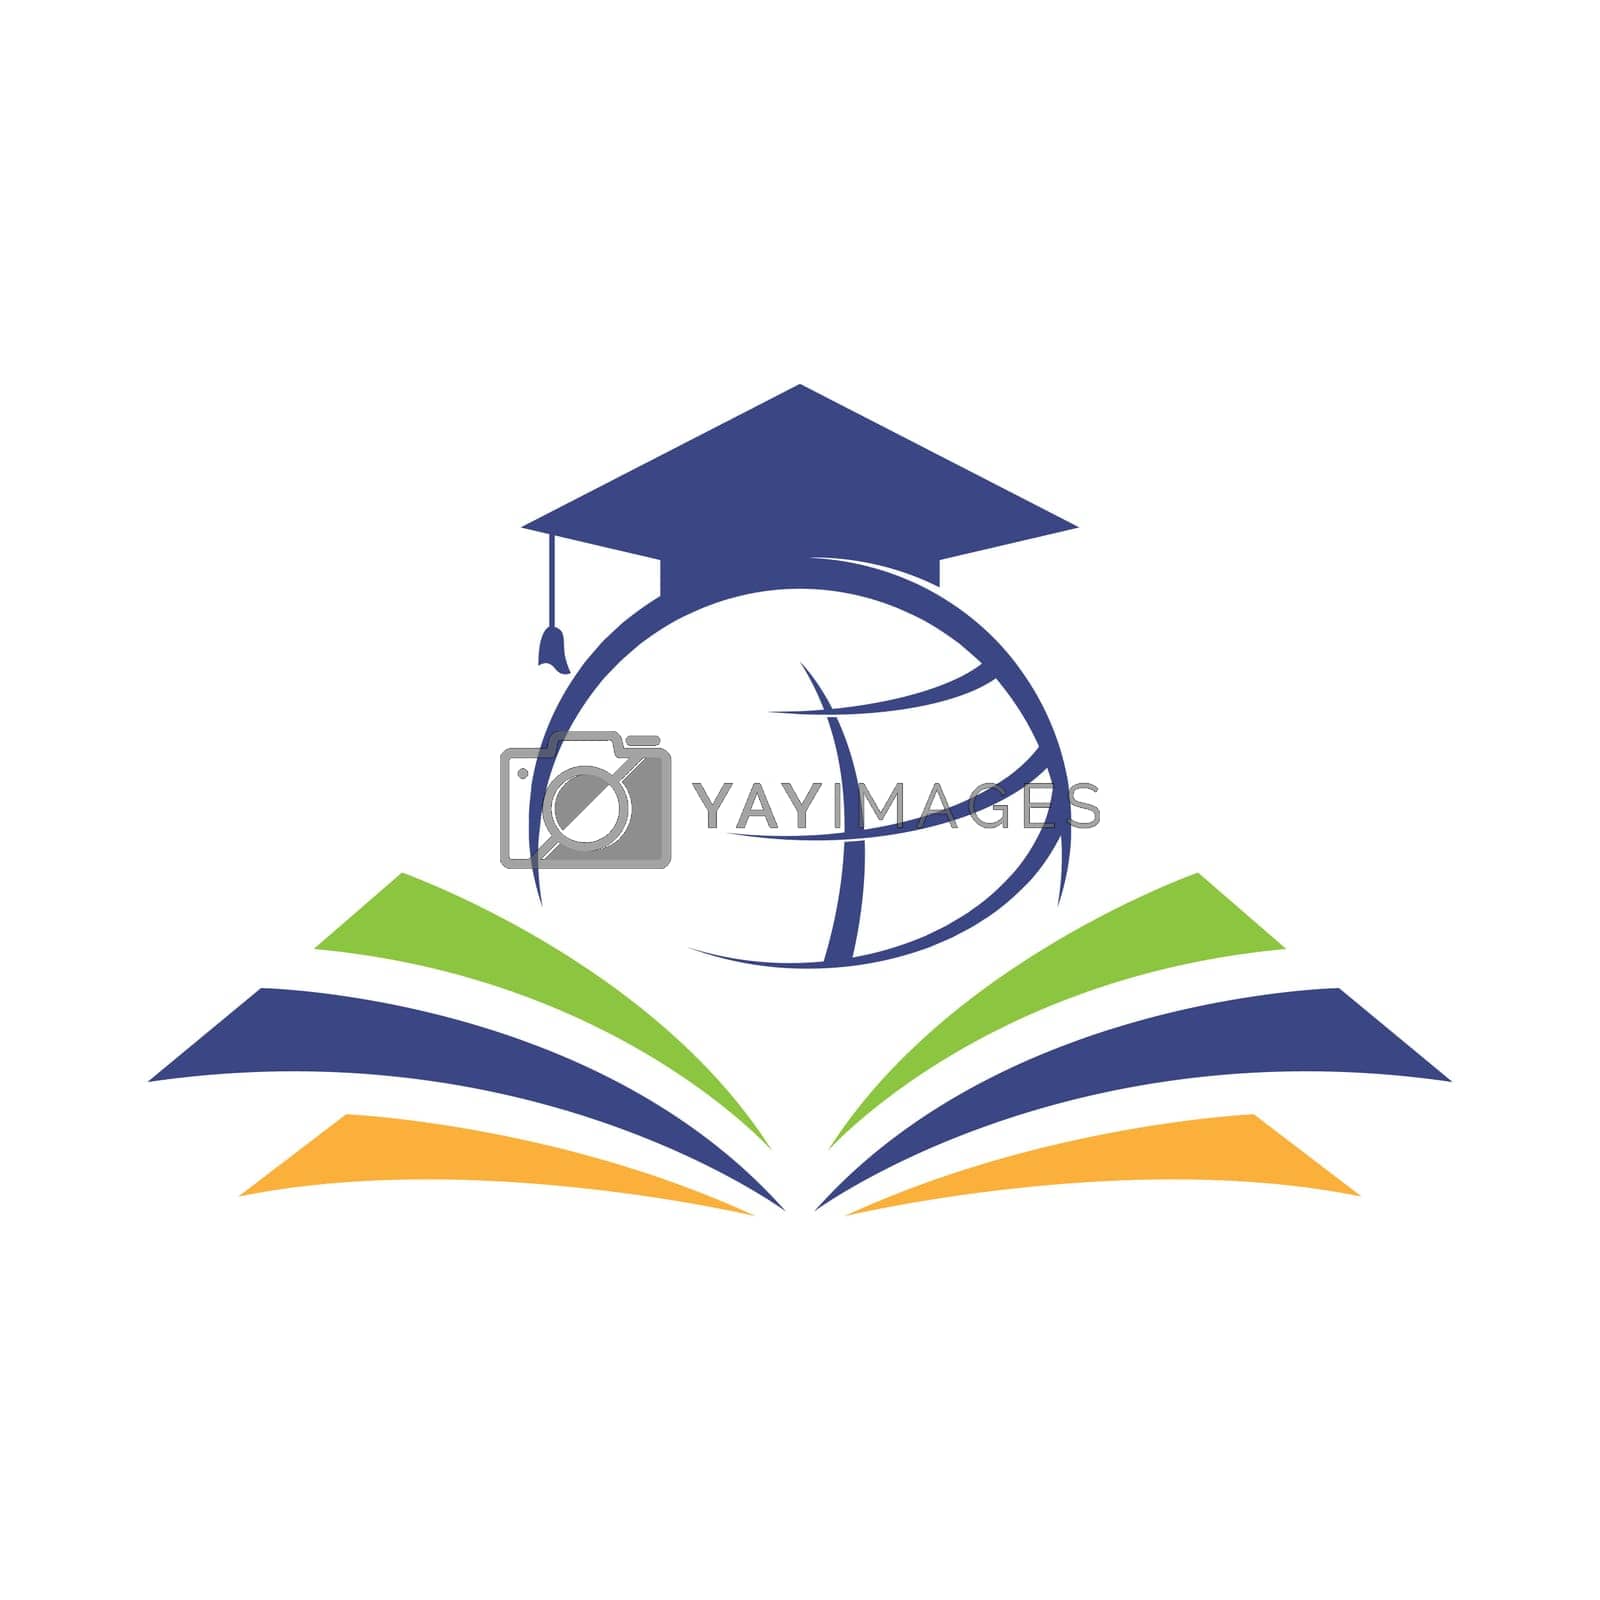 Education school logo design illustration